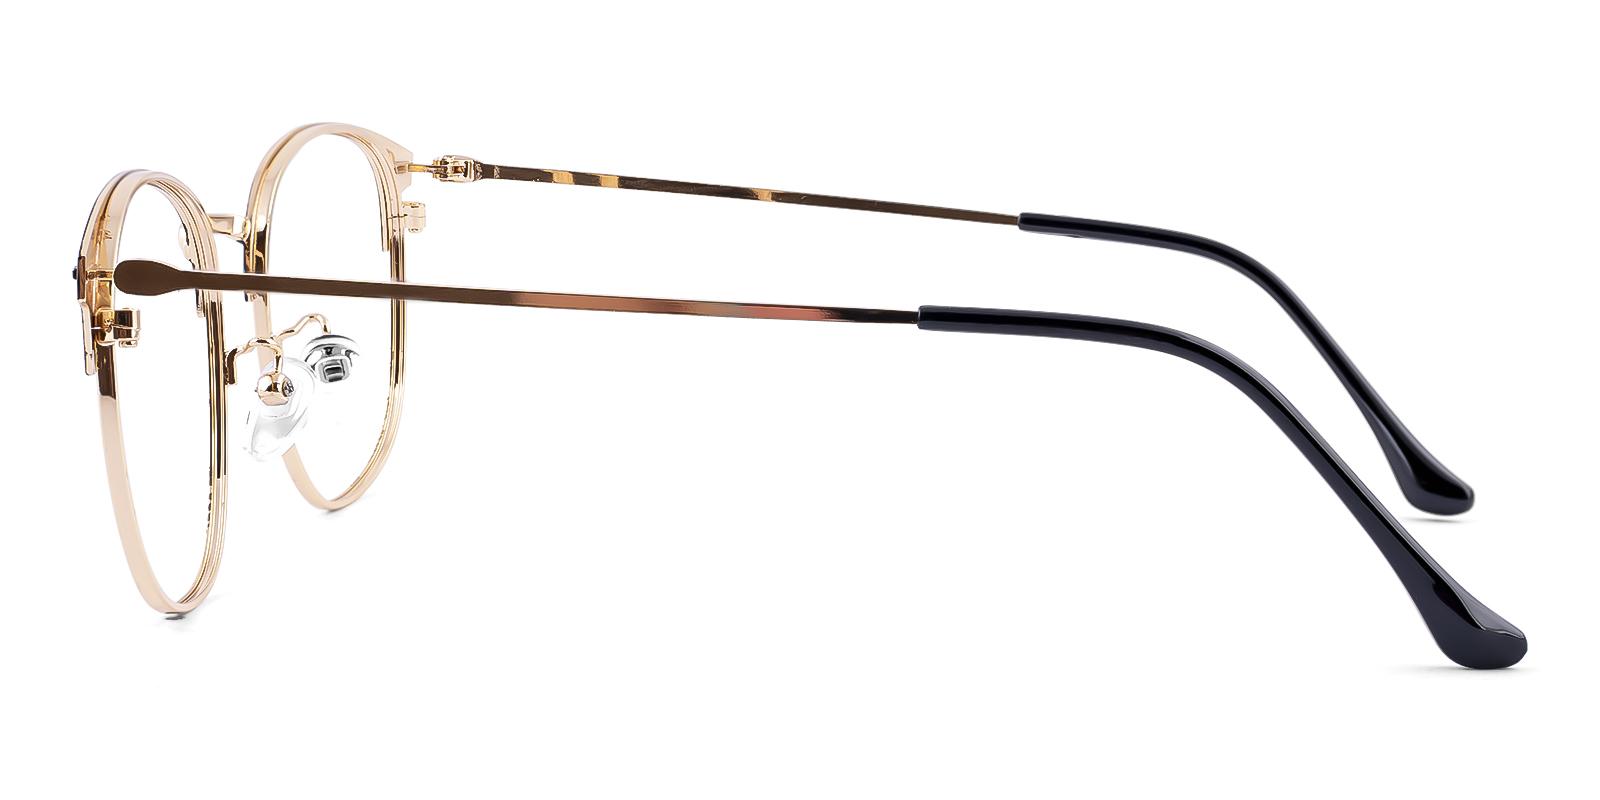 Plensure Gold Metal Eyeglasses , NosePads Frames from ABBE Glasses